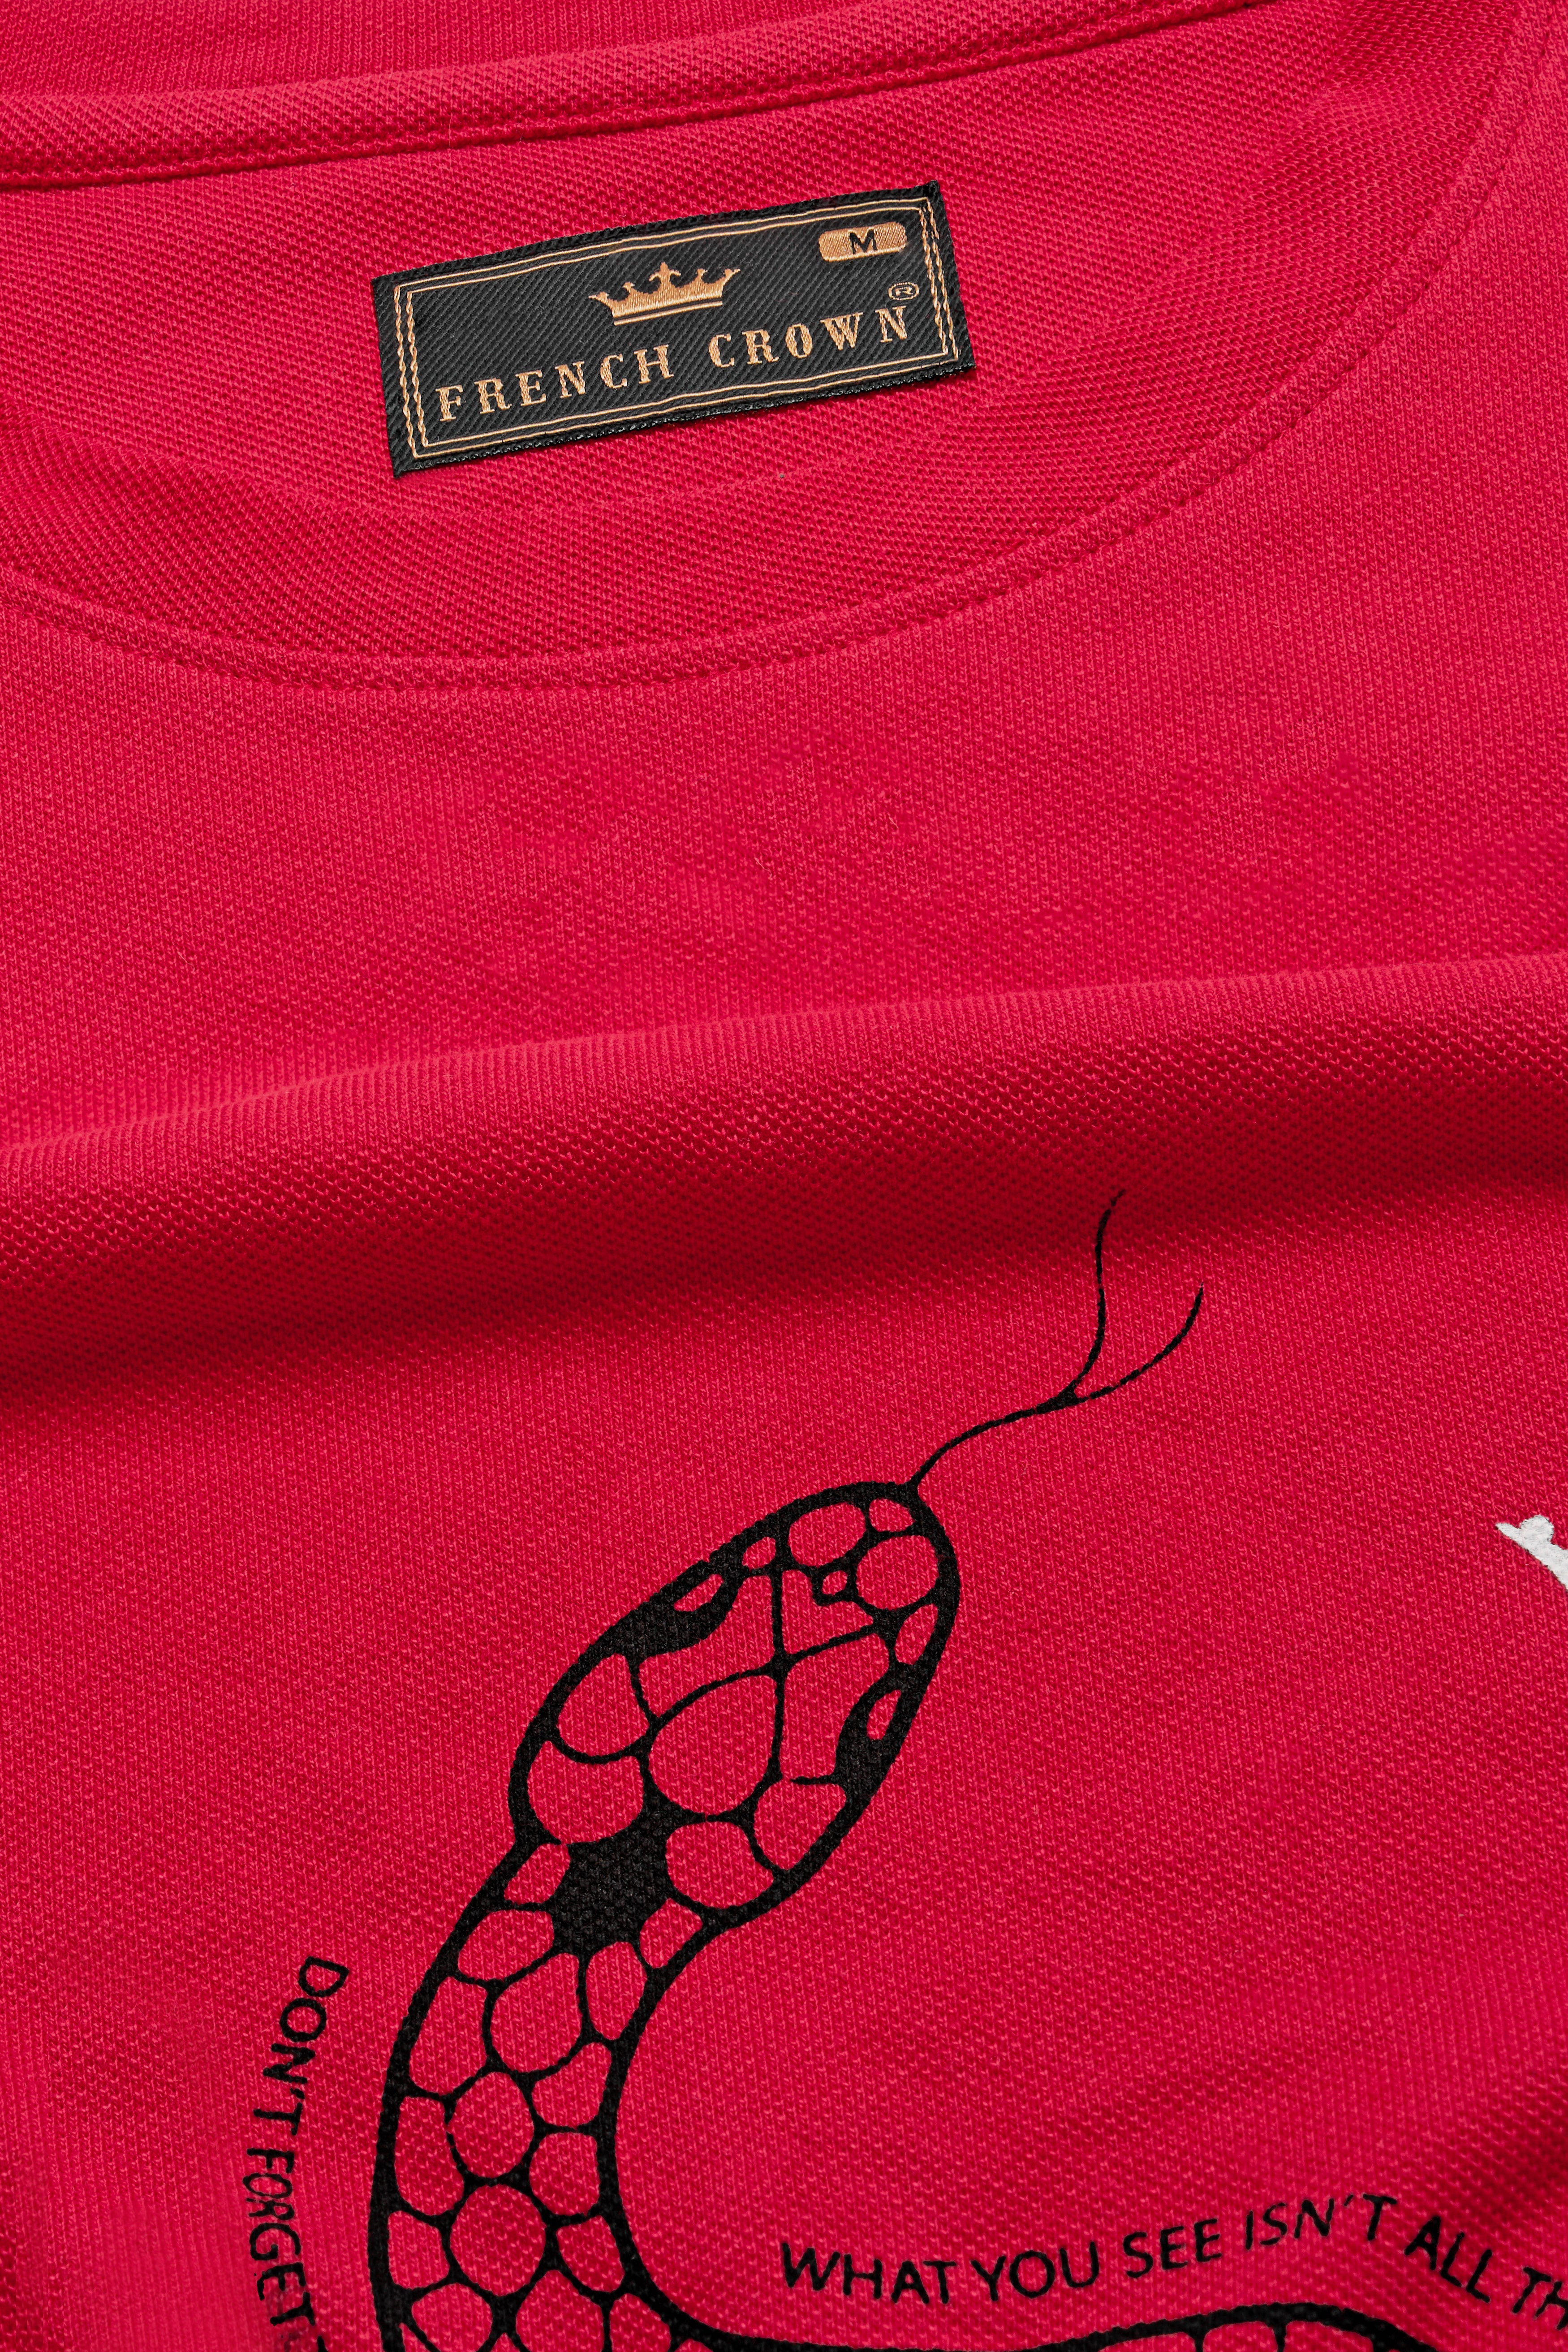 Monza Red Snake Printed Premium Cotton Pique T-Shirt TS904-S, TS904-M, TS904-L, TS904-XL, TS904-XXL